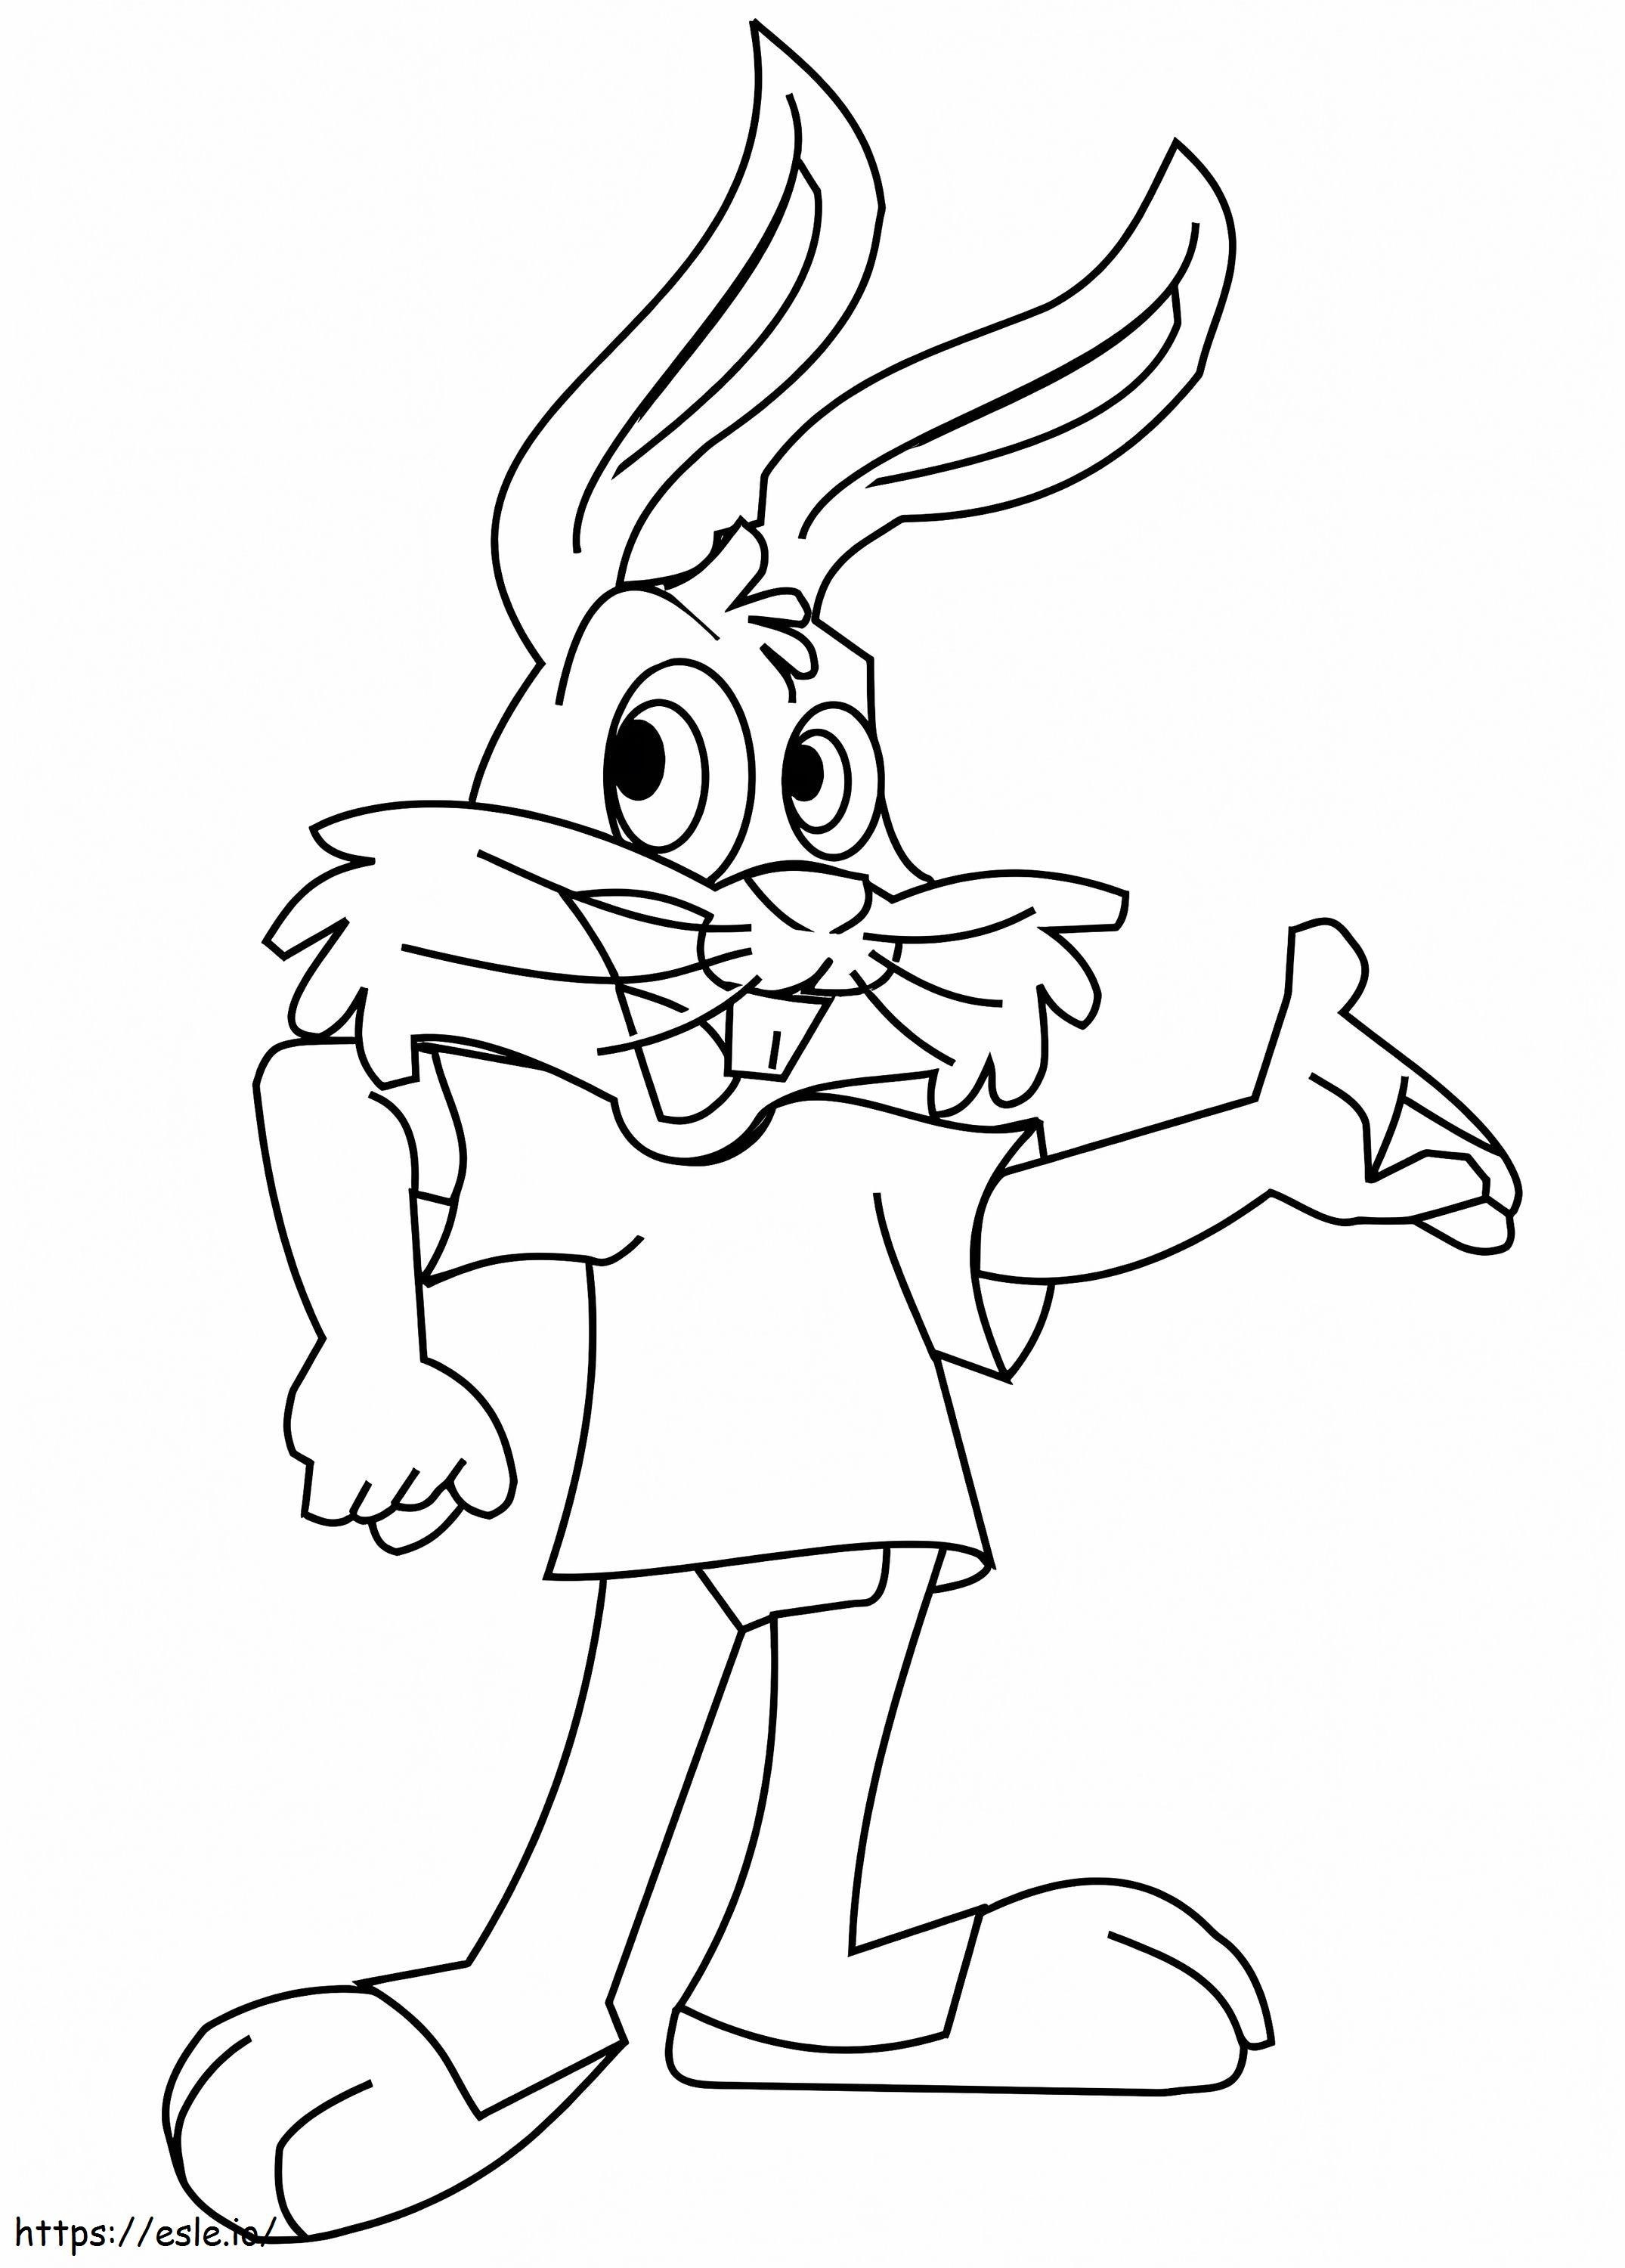 Um coelho de desenho animado para colorir